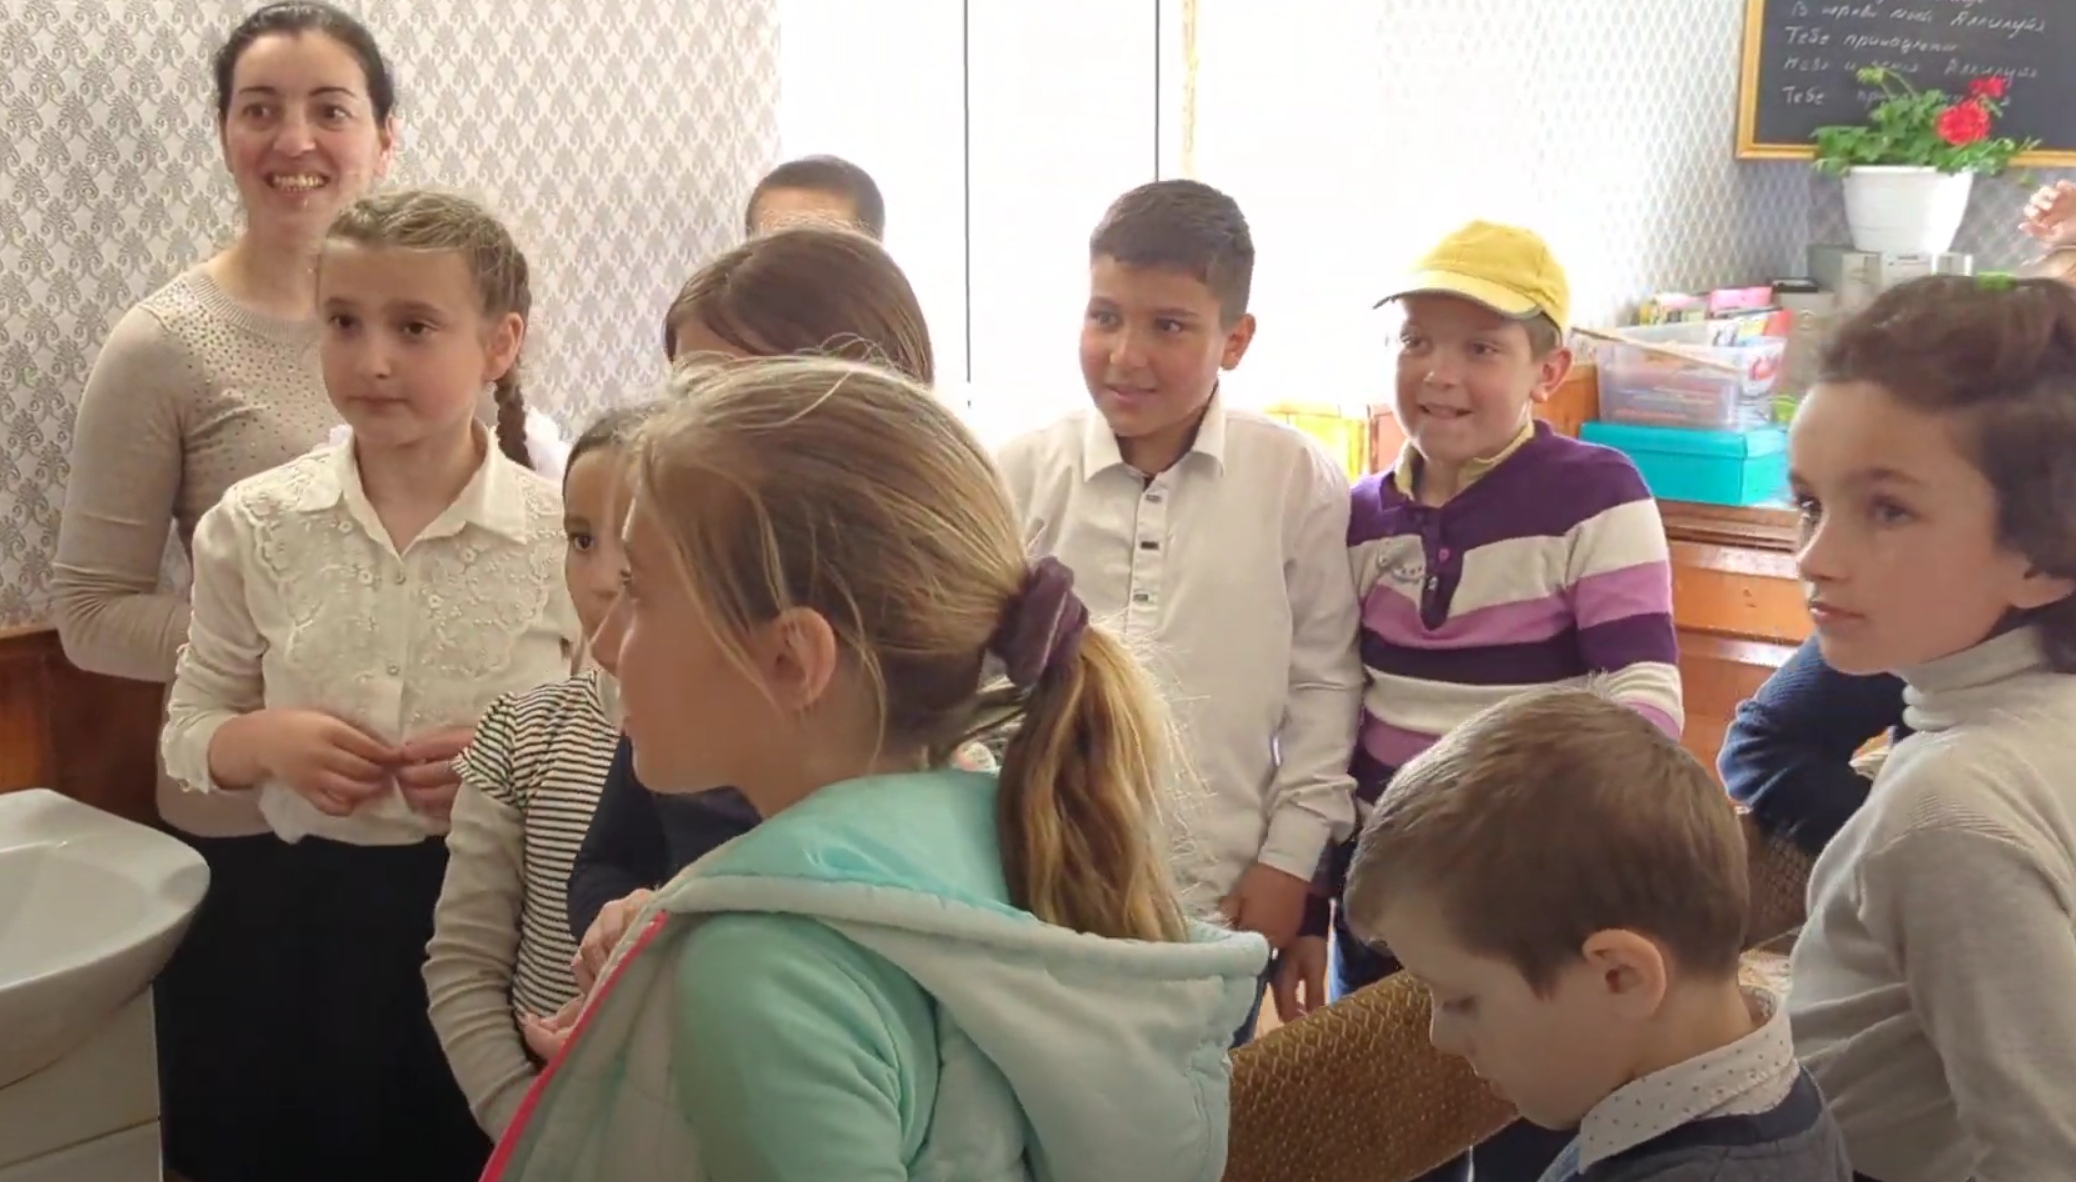 The Children of Moldova